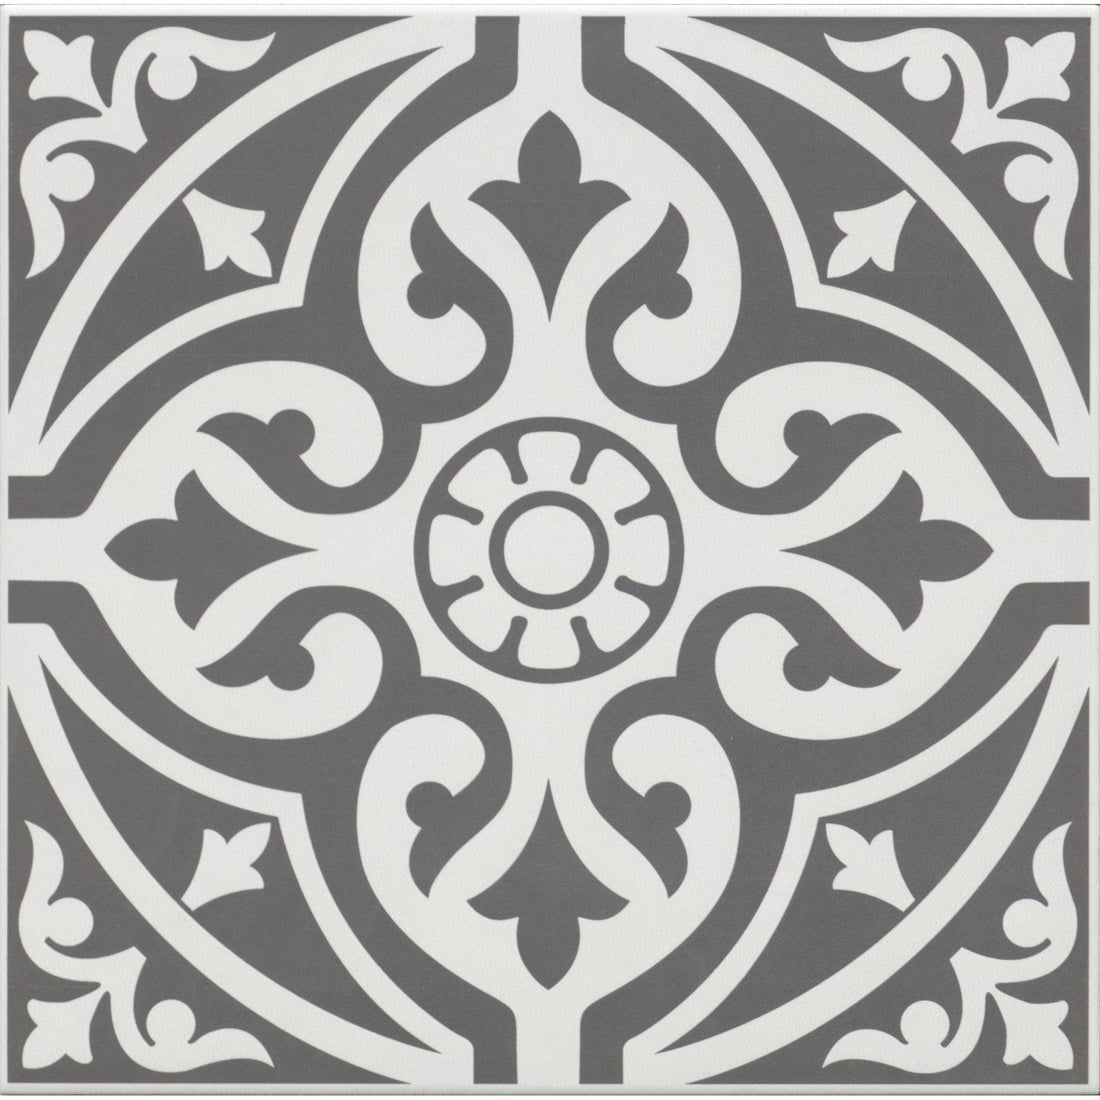 Edward Black Floor Tile - 33 x 33cm